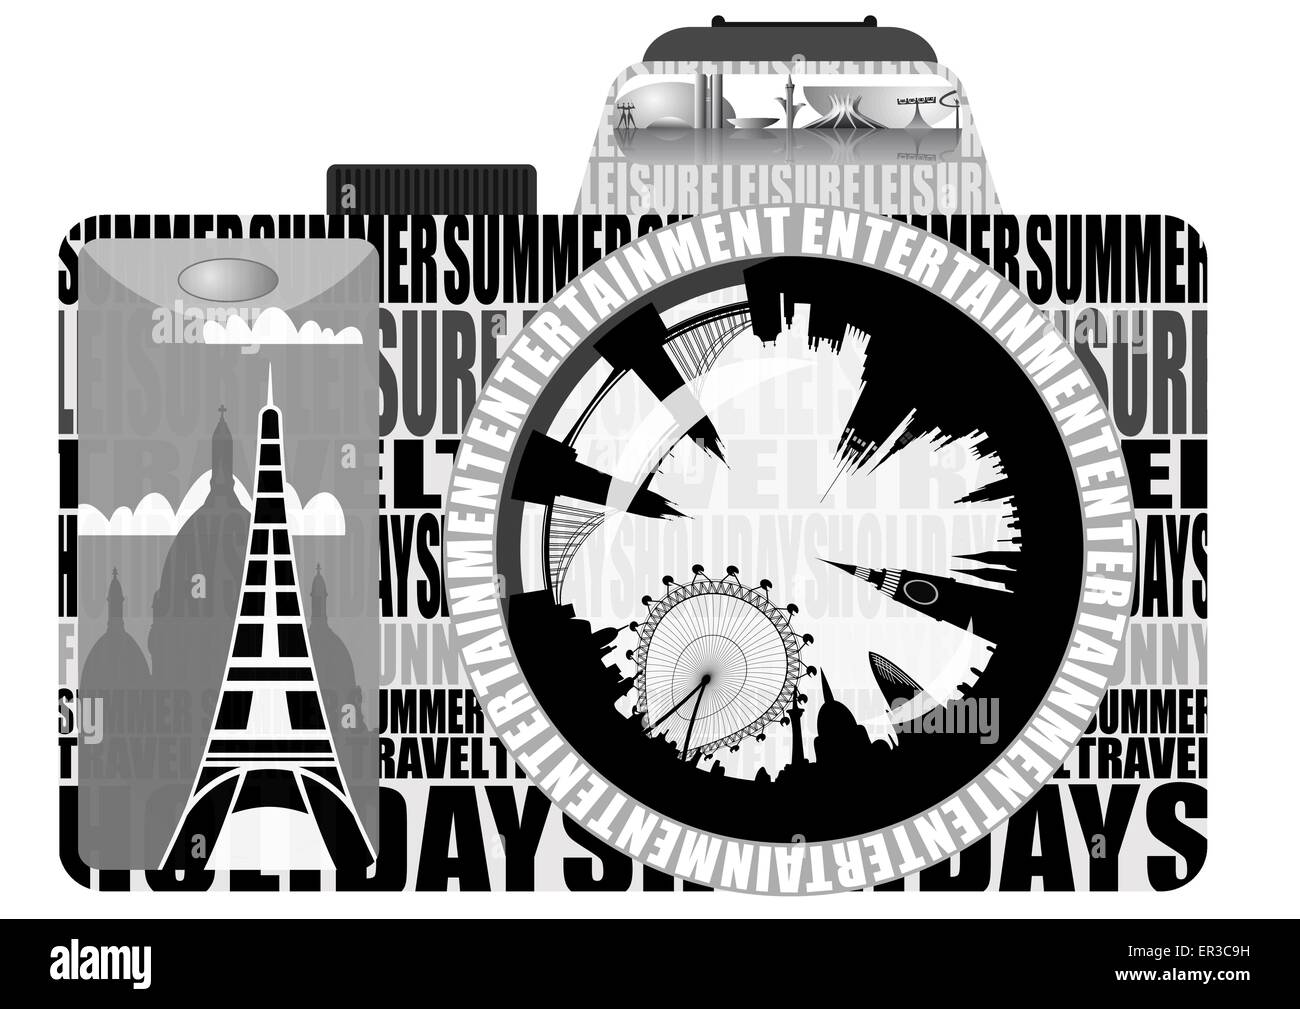 Holiday snap Banque d'images noir et blanc - Alamy